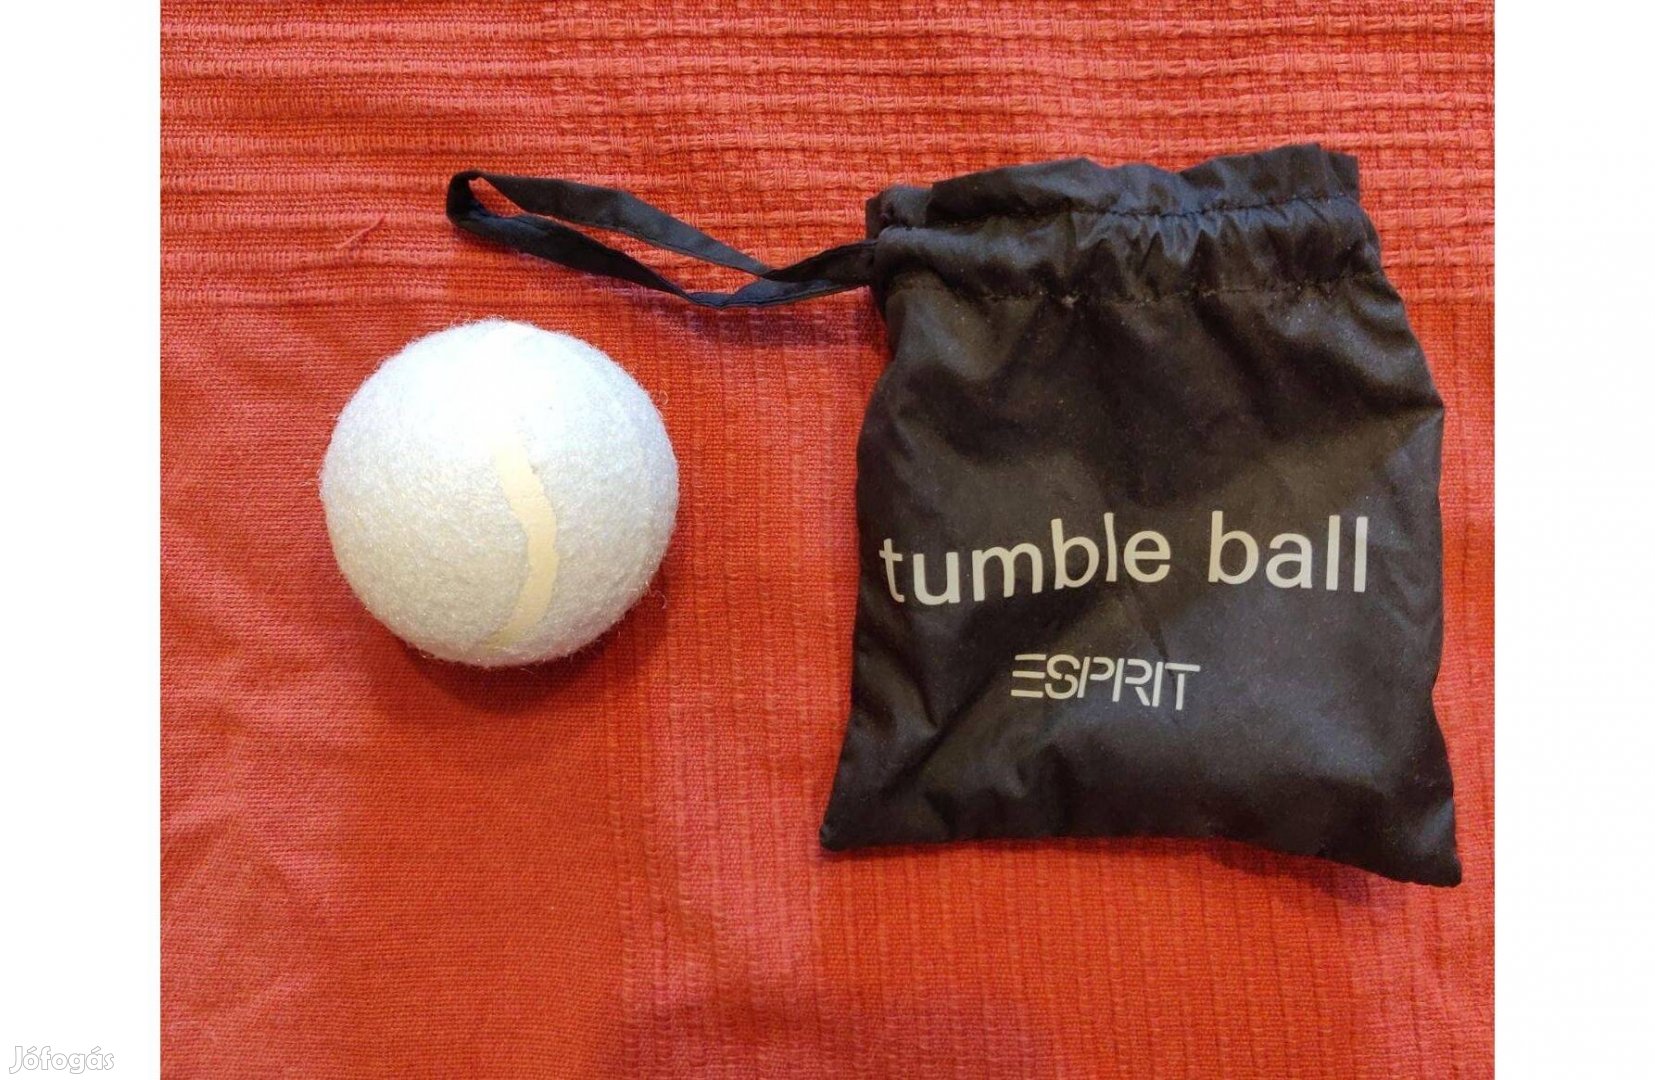 Esprit tumble ball - teniszlabda szárításhoz használatlan